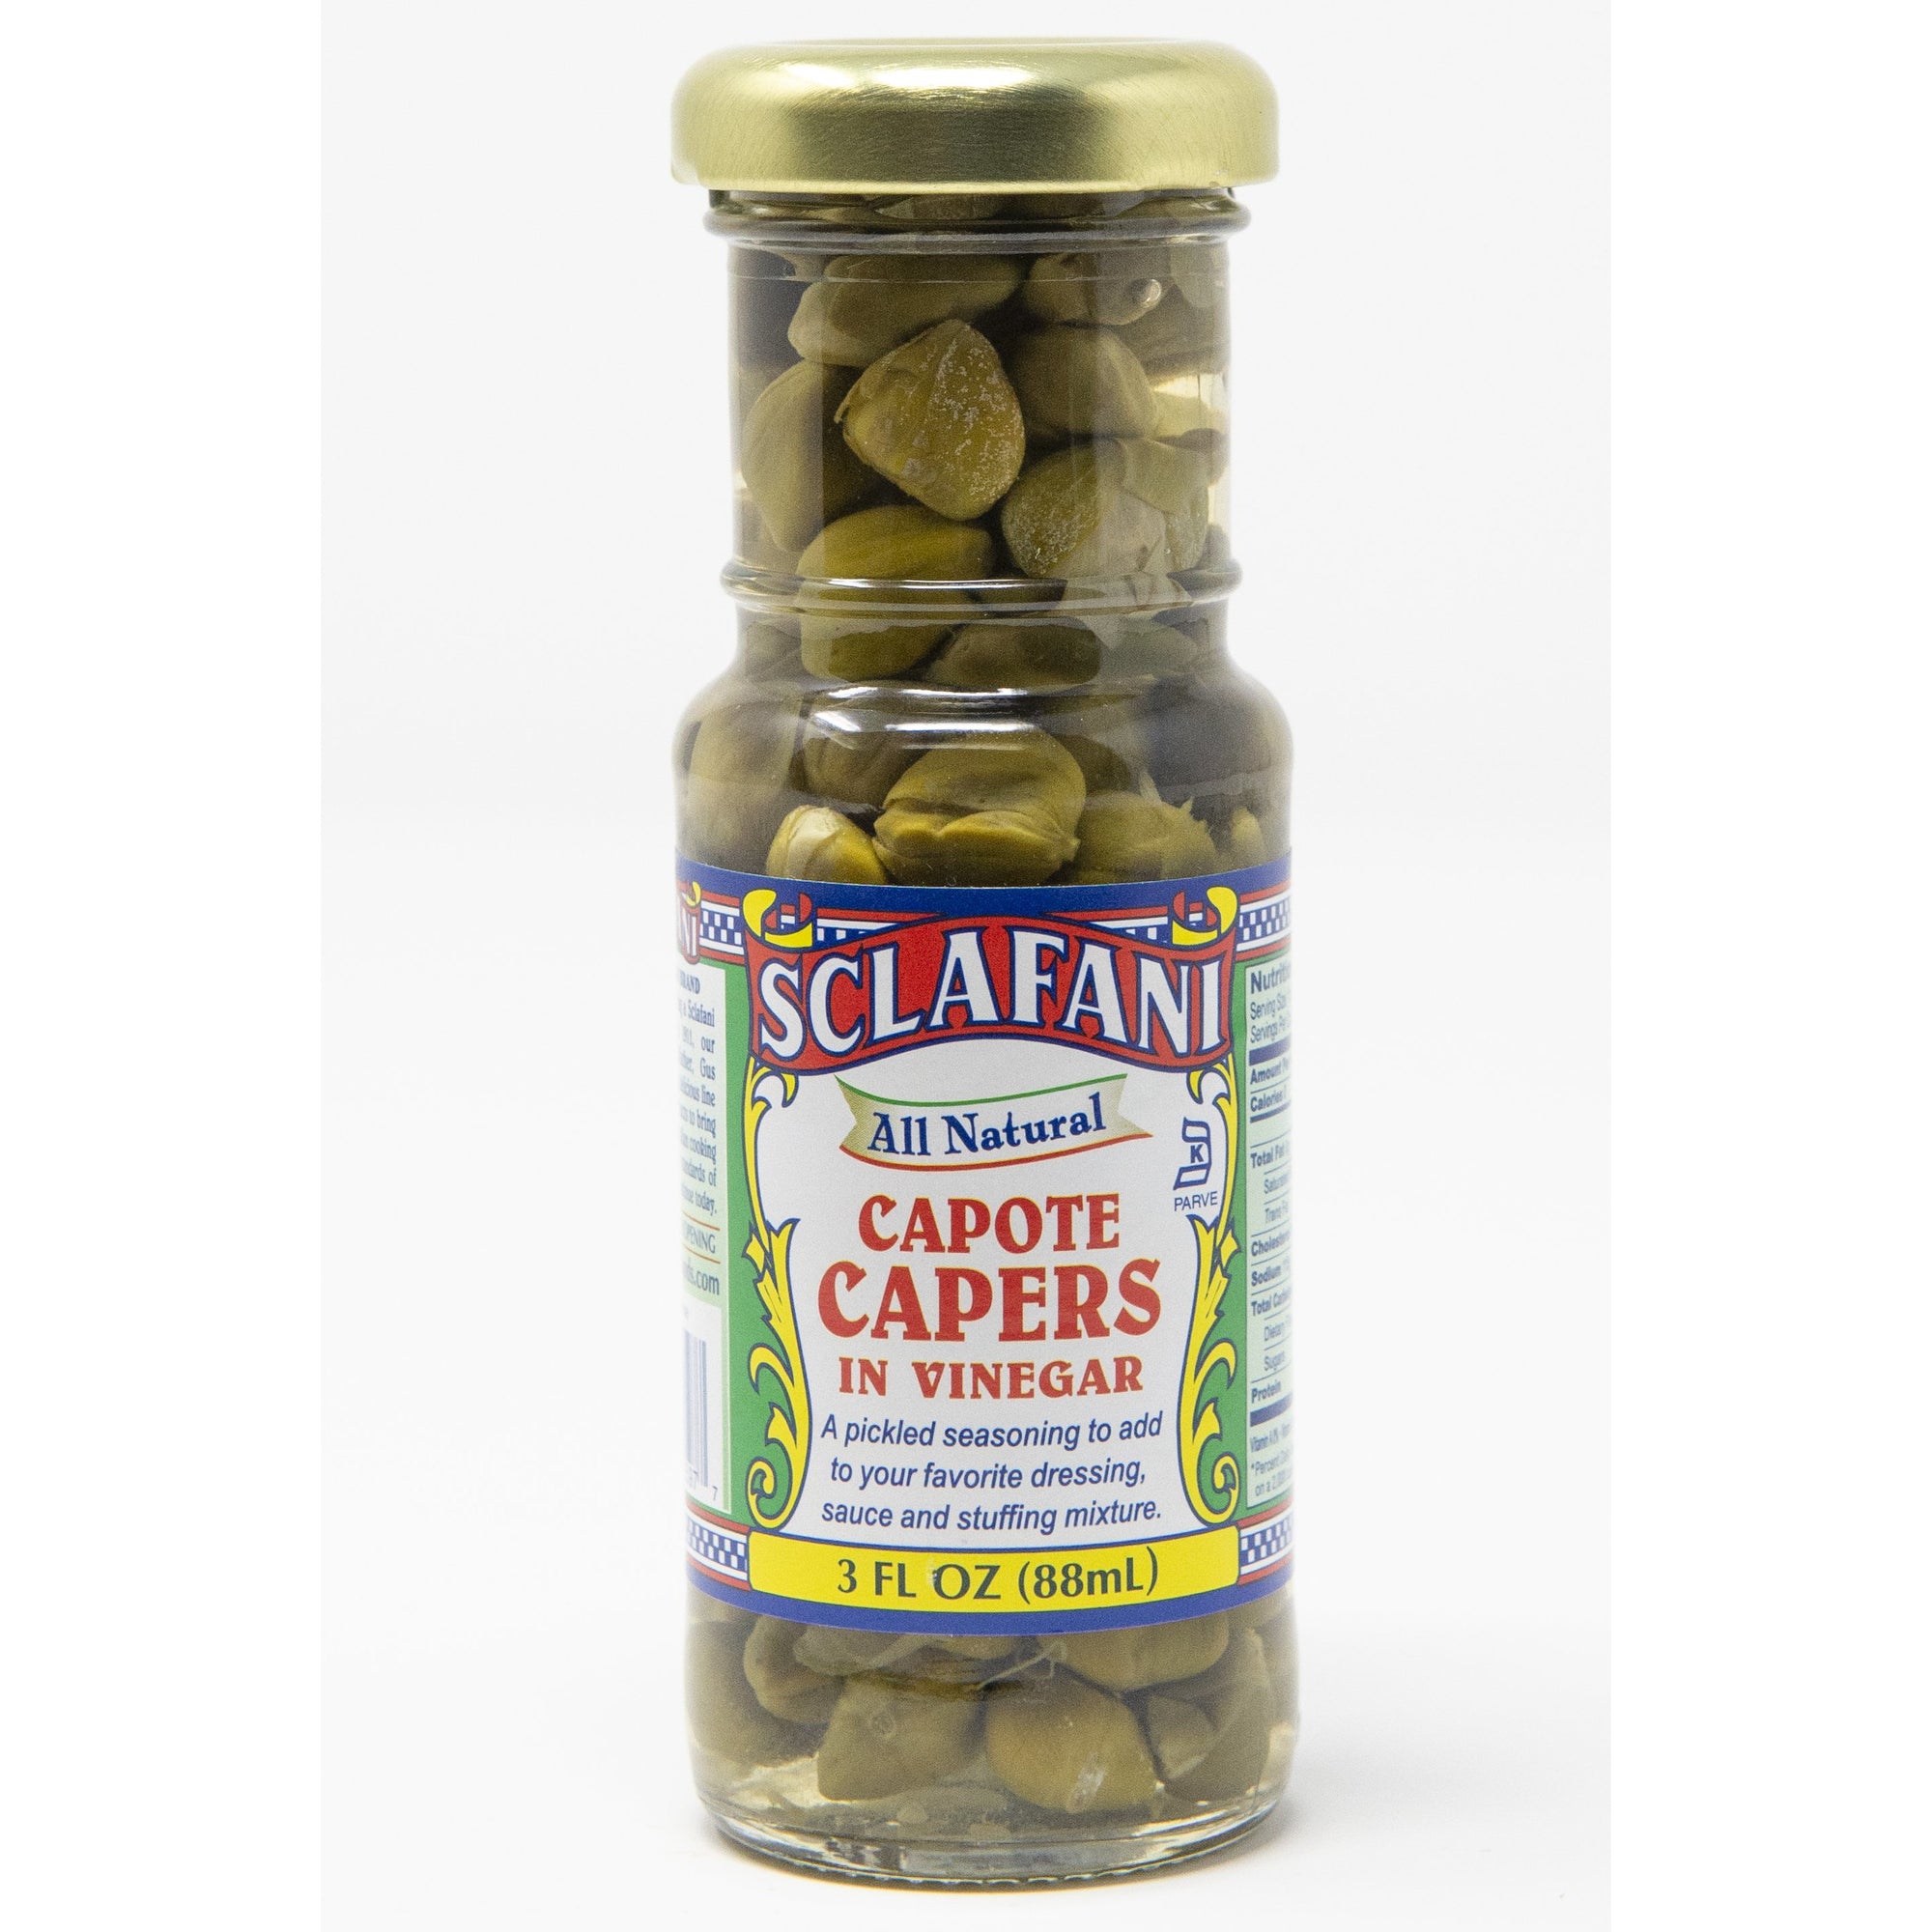 Sclafani Capers in Wine Vinegar 3 oz.